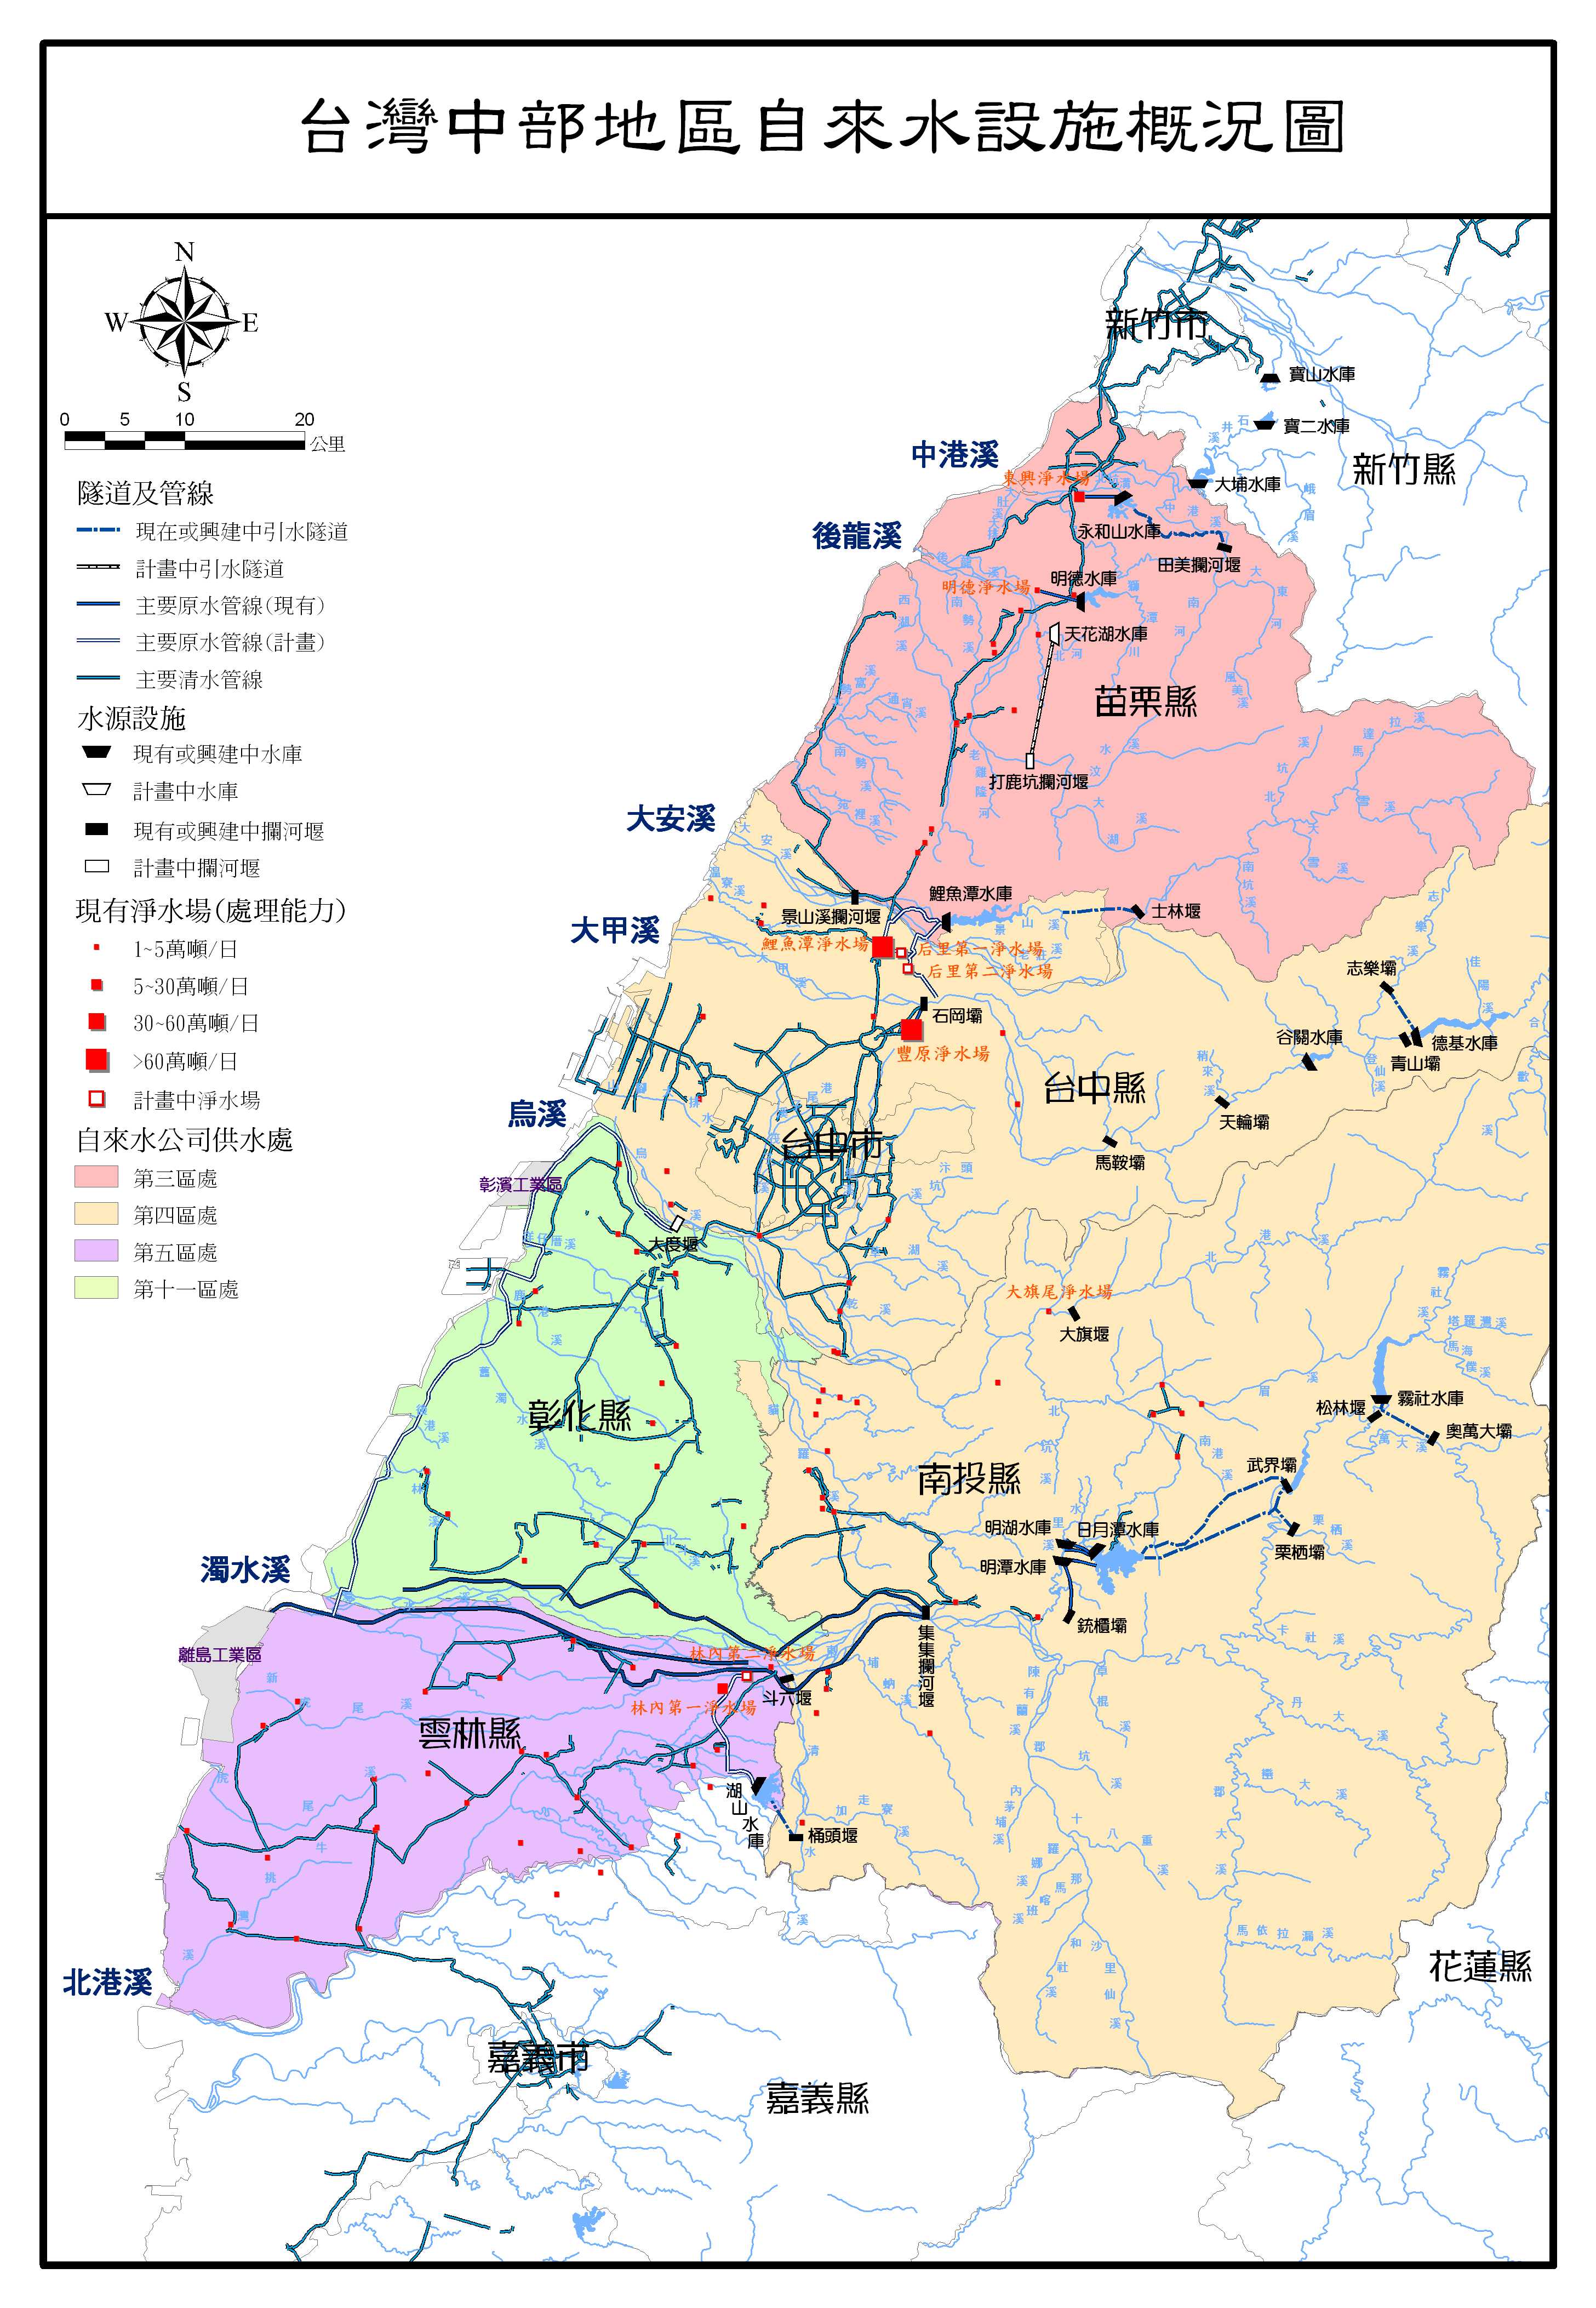 中部地區自來水設施概況圖70-103